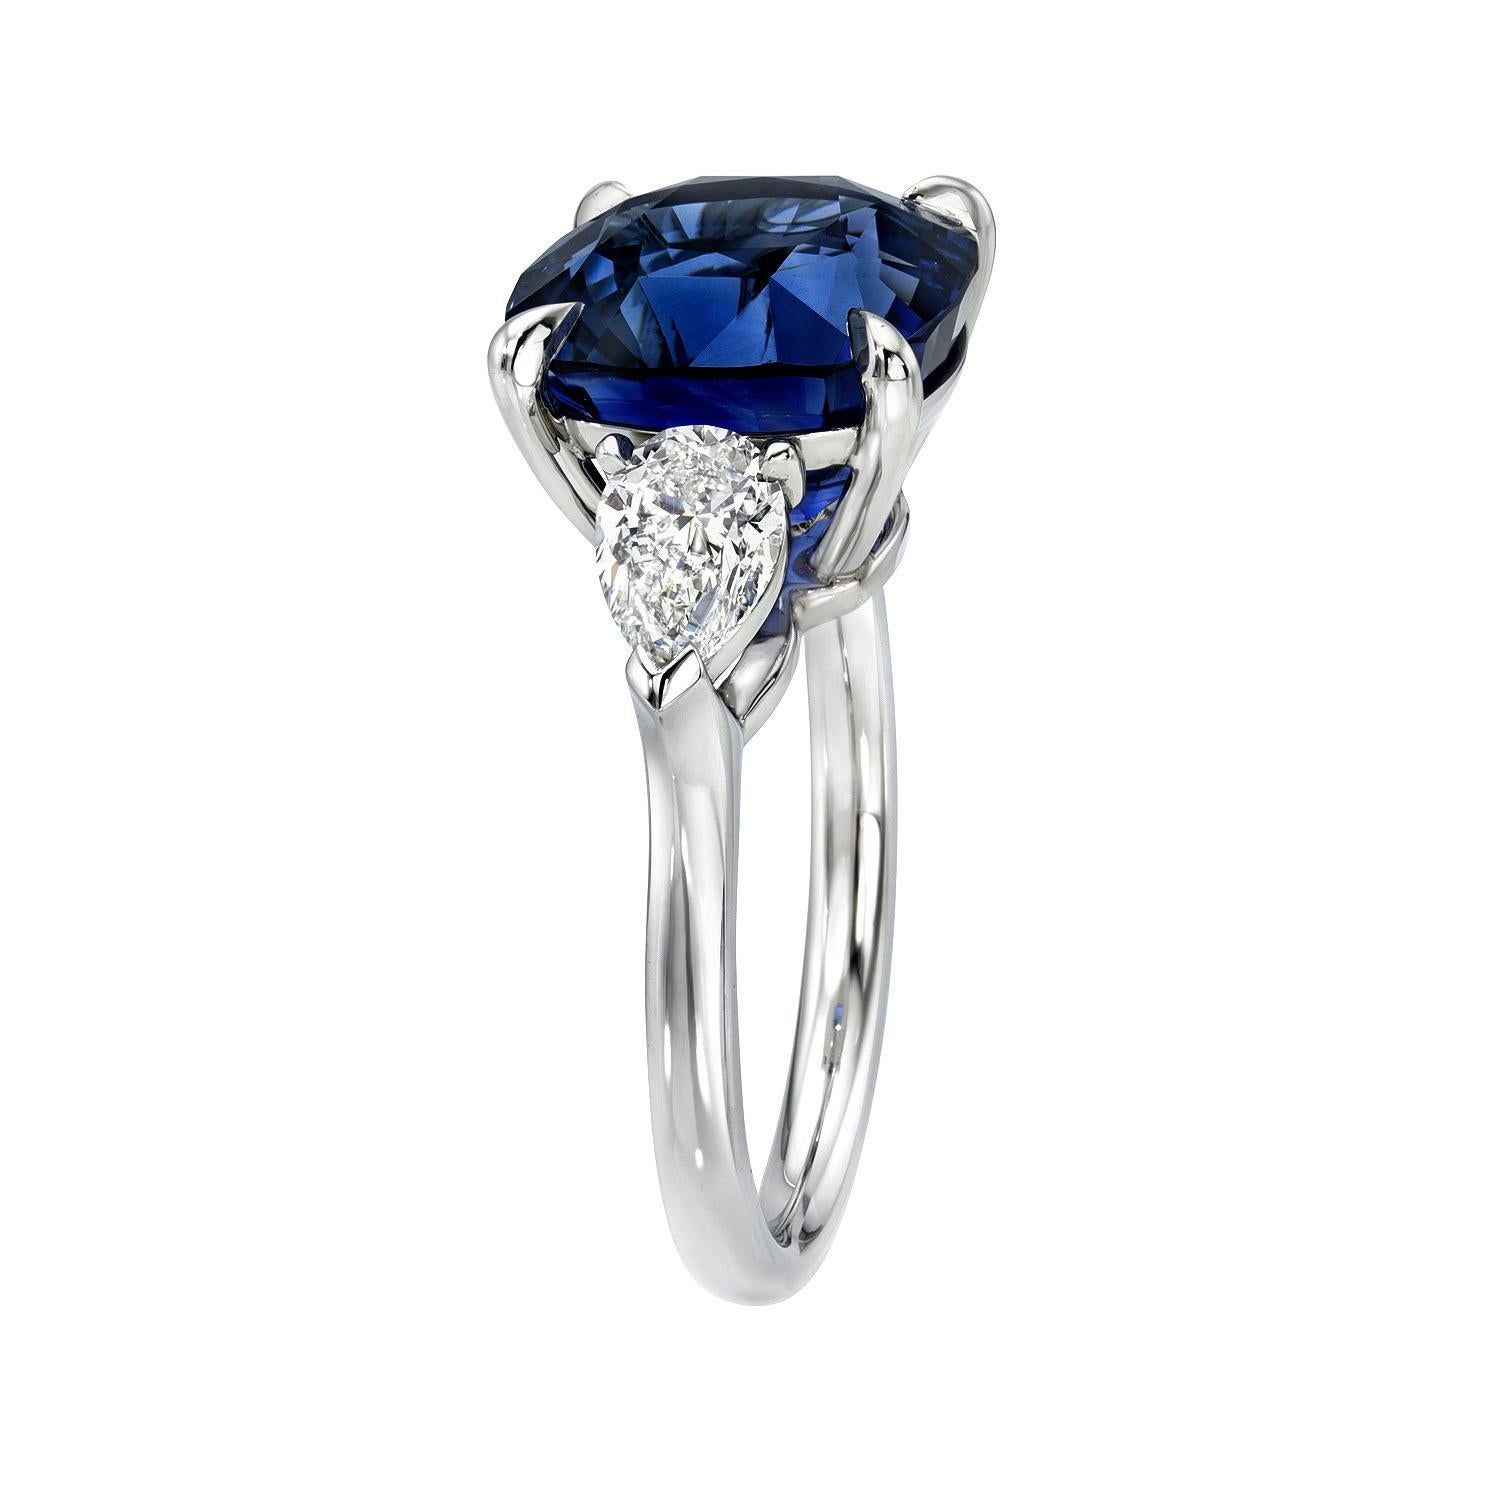 Impressionnante bague en platine à trois pierres, saphir bleu royal de Ceylan de 8,02 carats, flanquée d'une paire de diamants poire de 1,00 carat, E/VS1.
Bague taille 6. Le redimensionnement est complémentaire sur demande.
Les rapports de la GIA